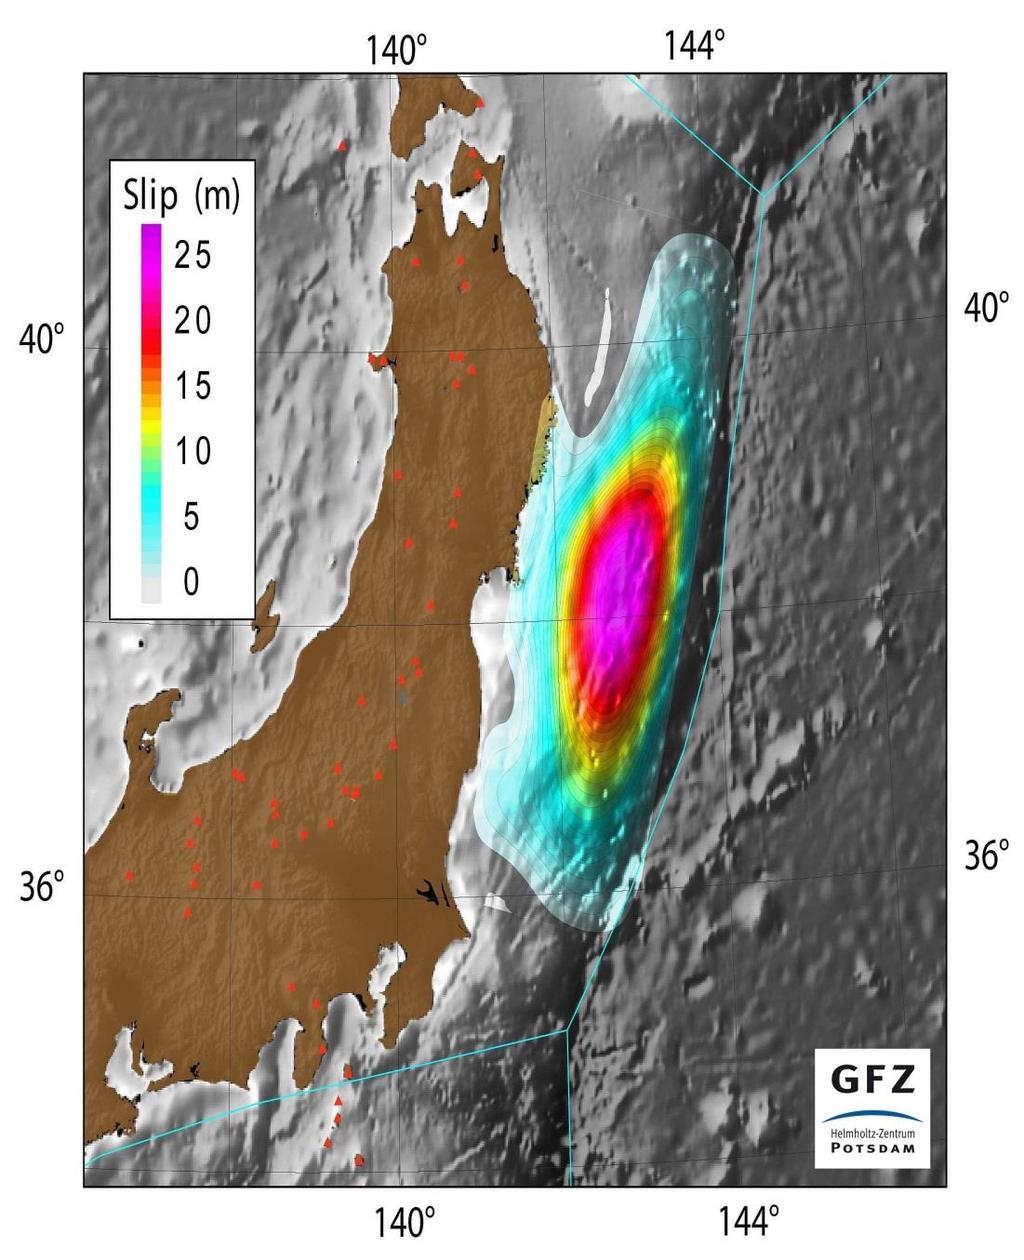 The largest Earthquakes and Tsunamis Tohoku, 11 Mar